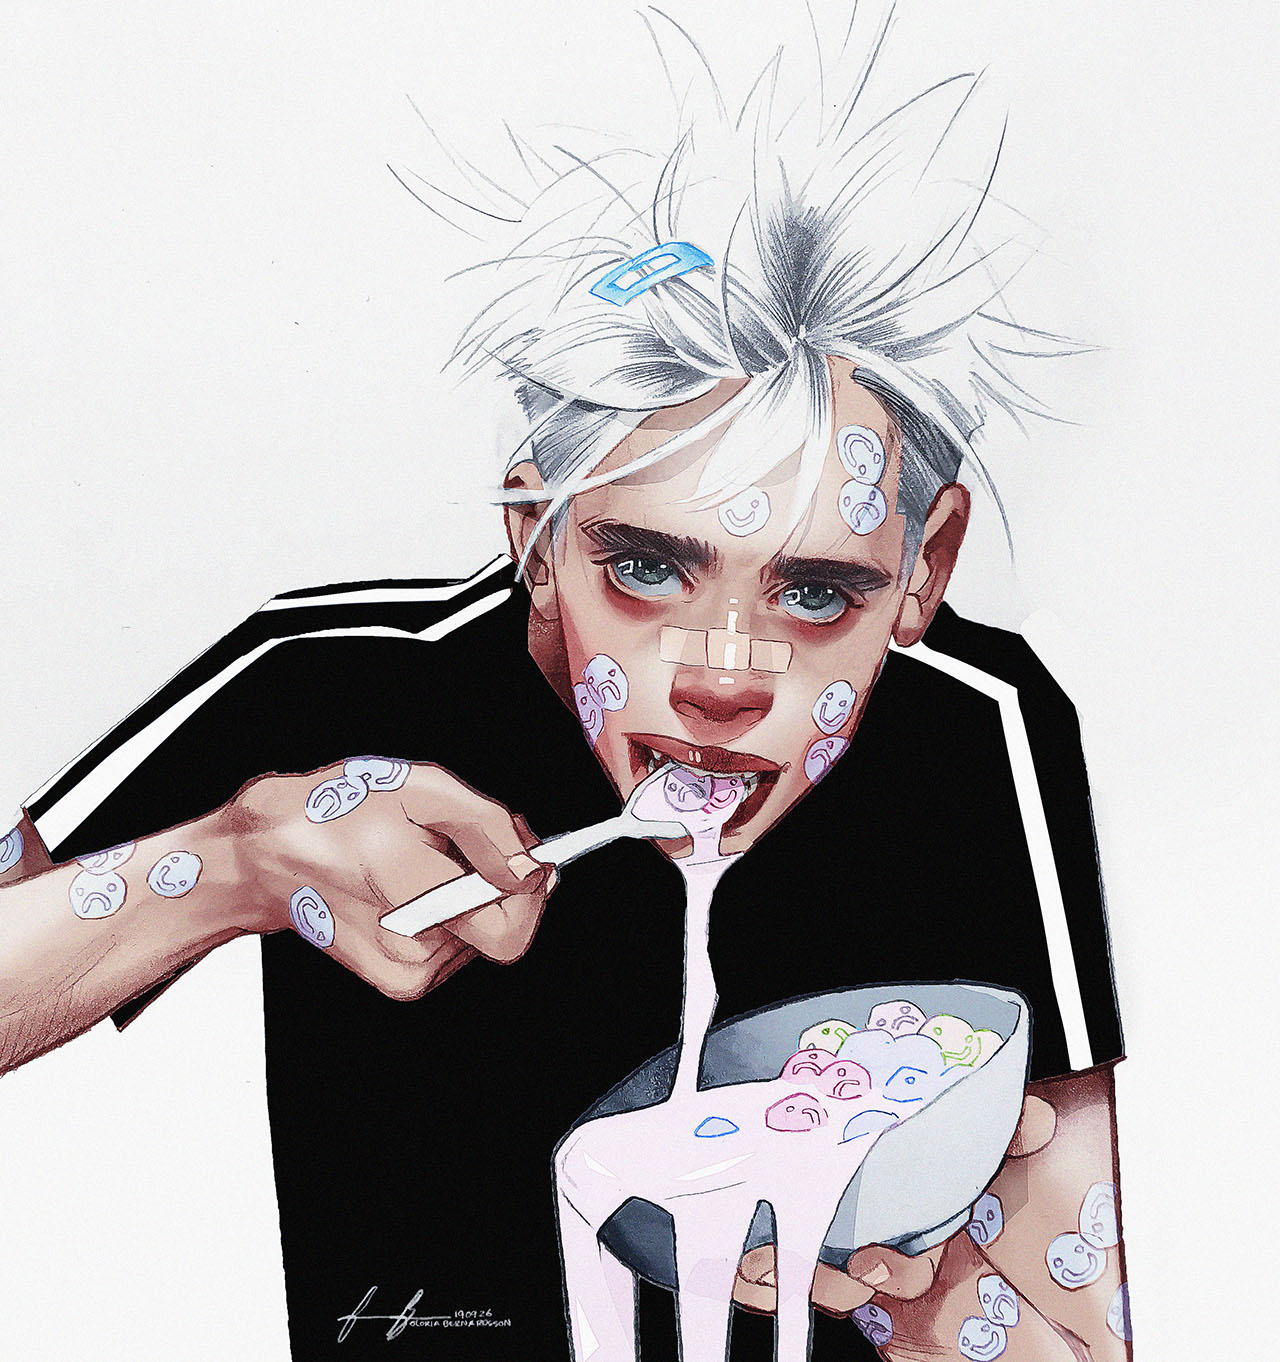 Drawing of boy with stickers on face eating cereal Illustration av kille med klistermärken i ansiktet som äter flingor med mjölk